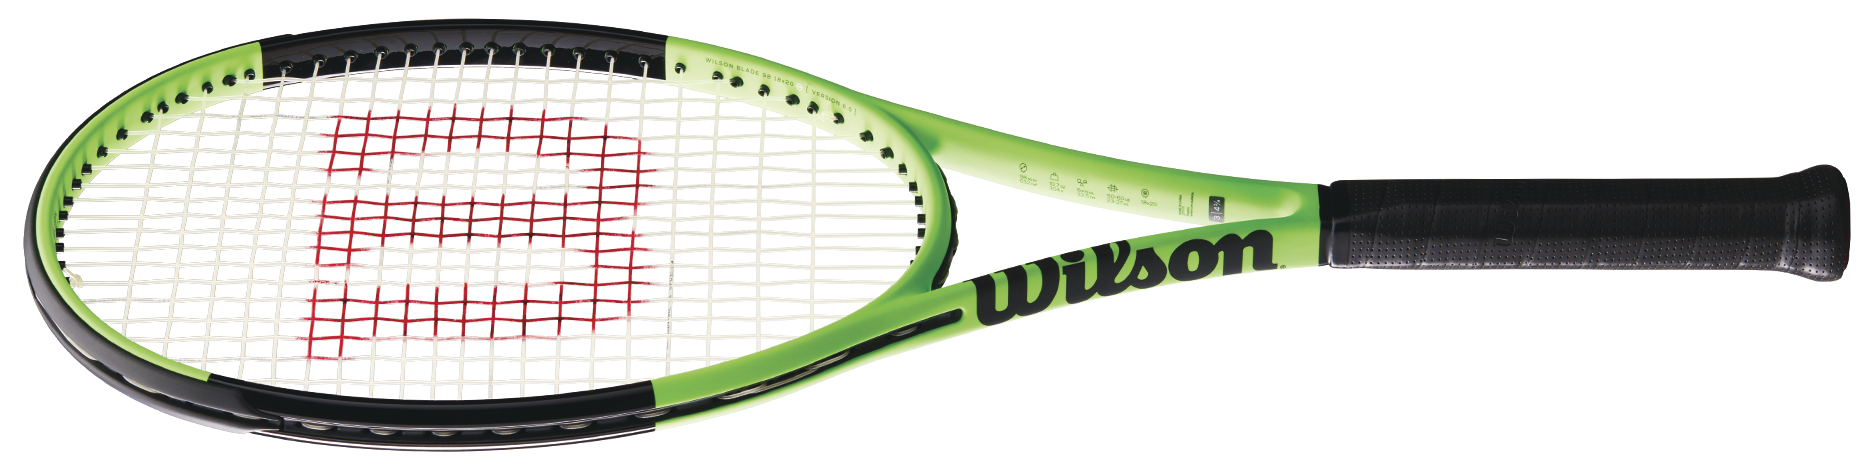 Wilson Blade fordított színű teniszütő